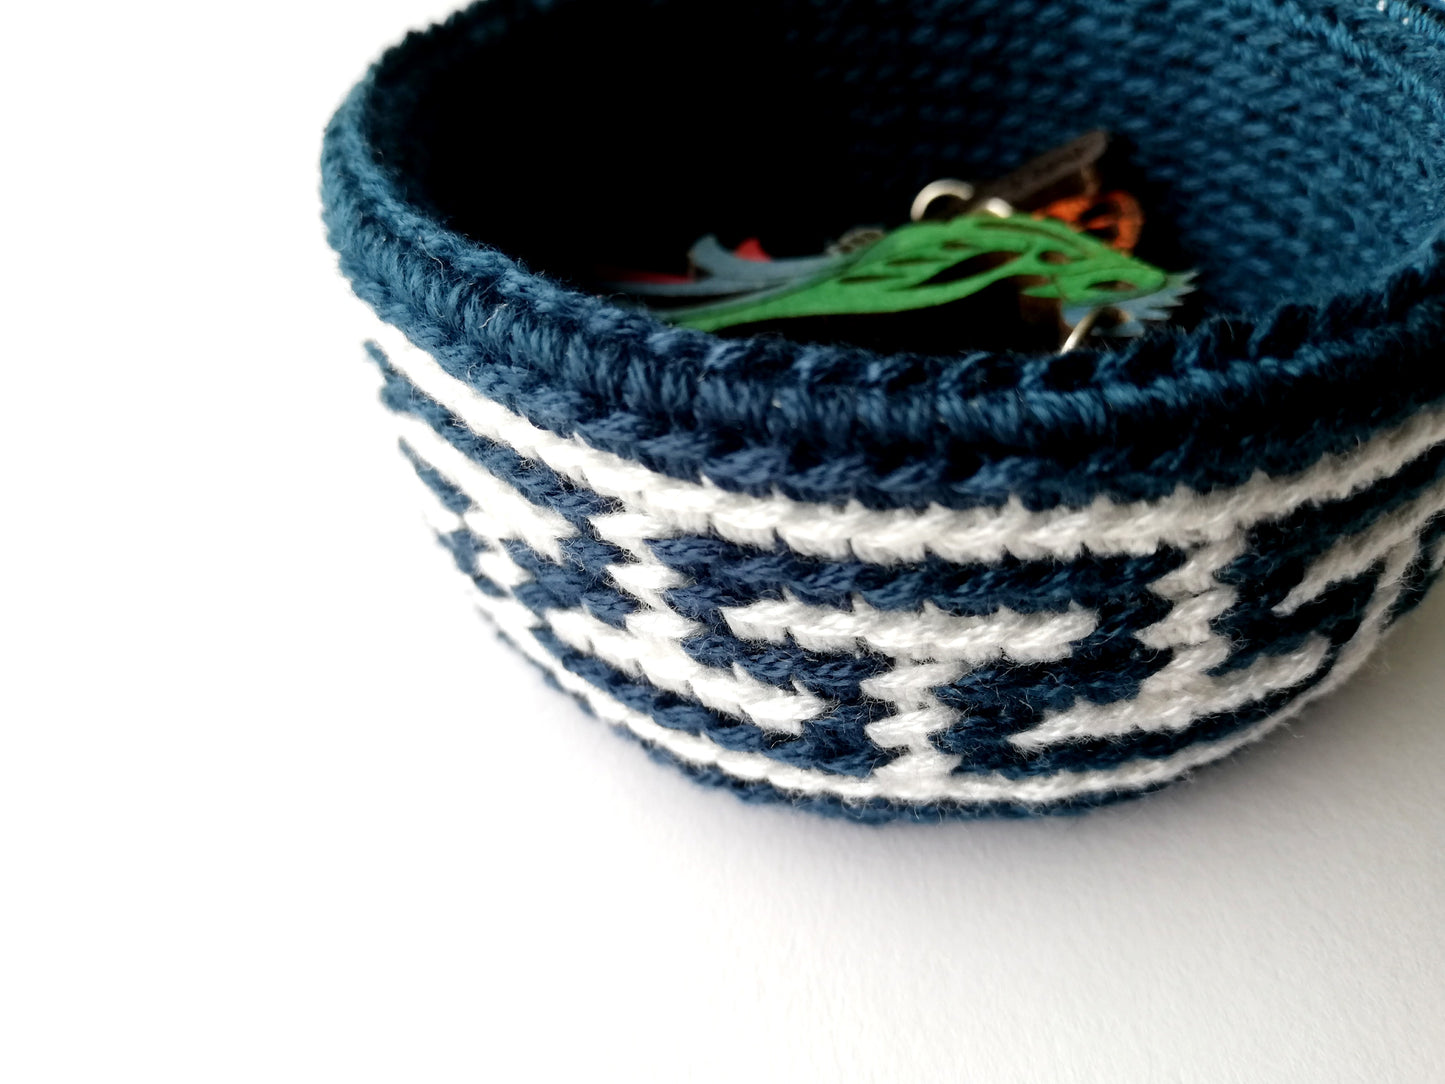 Tapestry crochet basket Meander